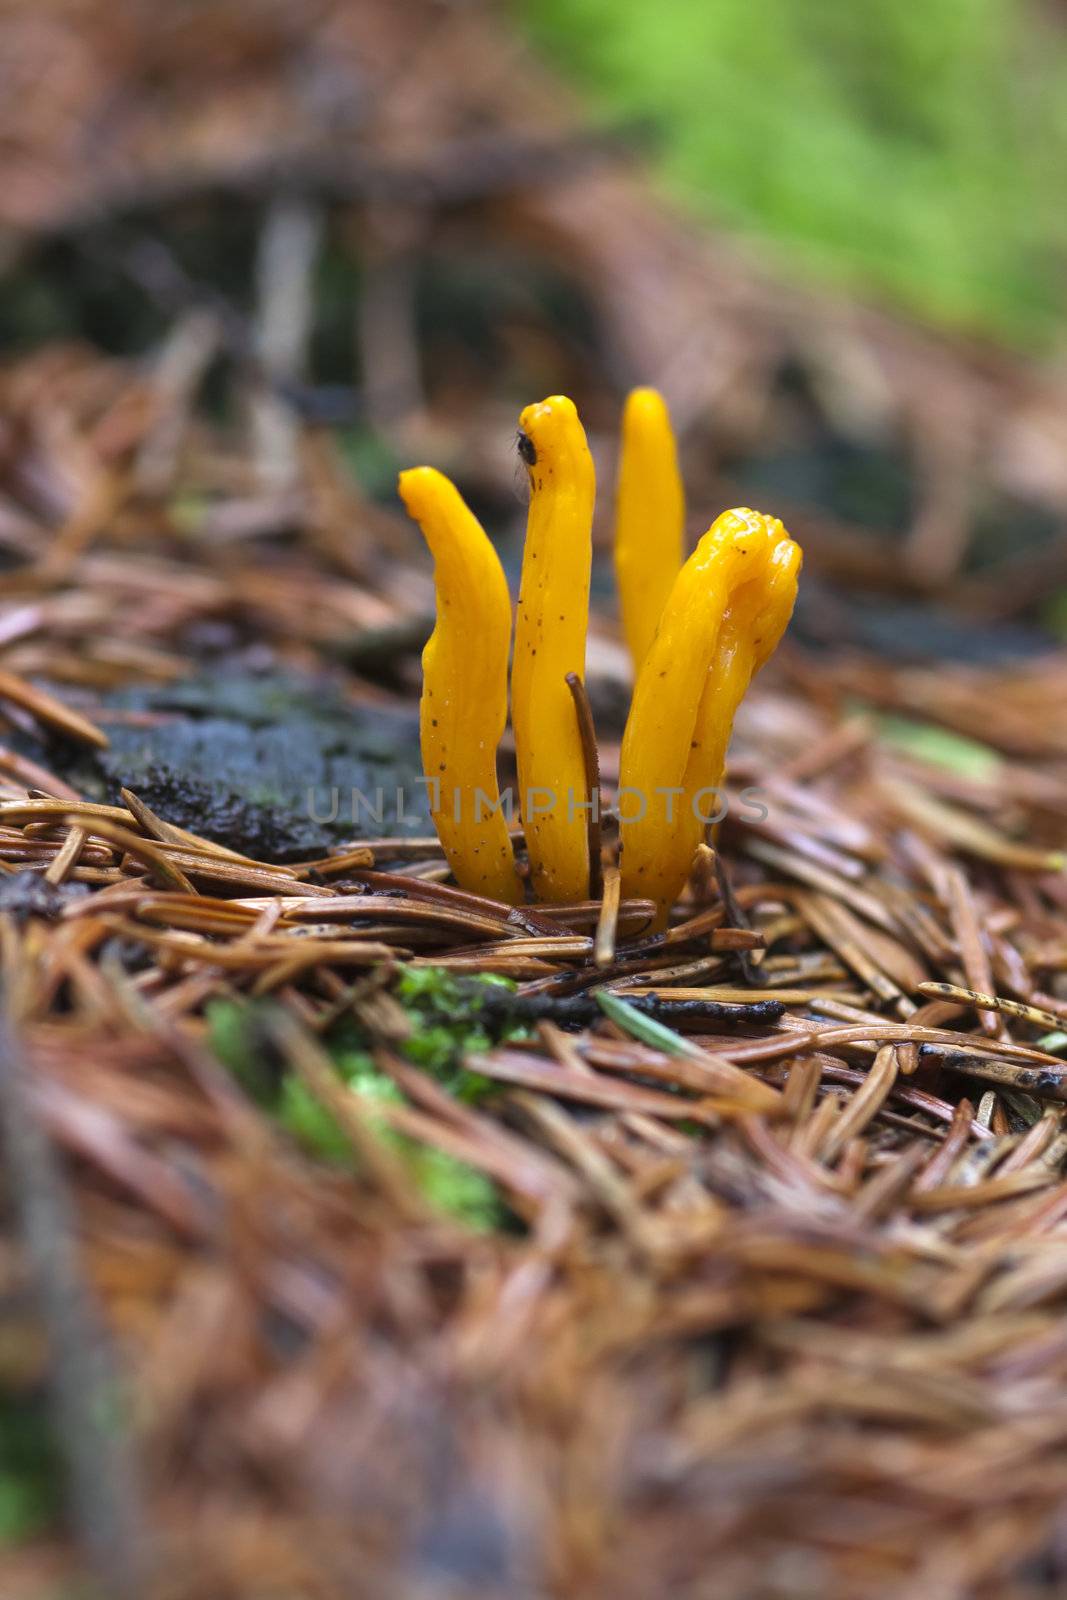 Detail of the mushroom - club fungus - yellow coral fungus